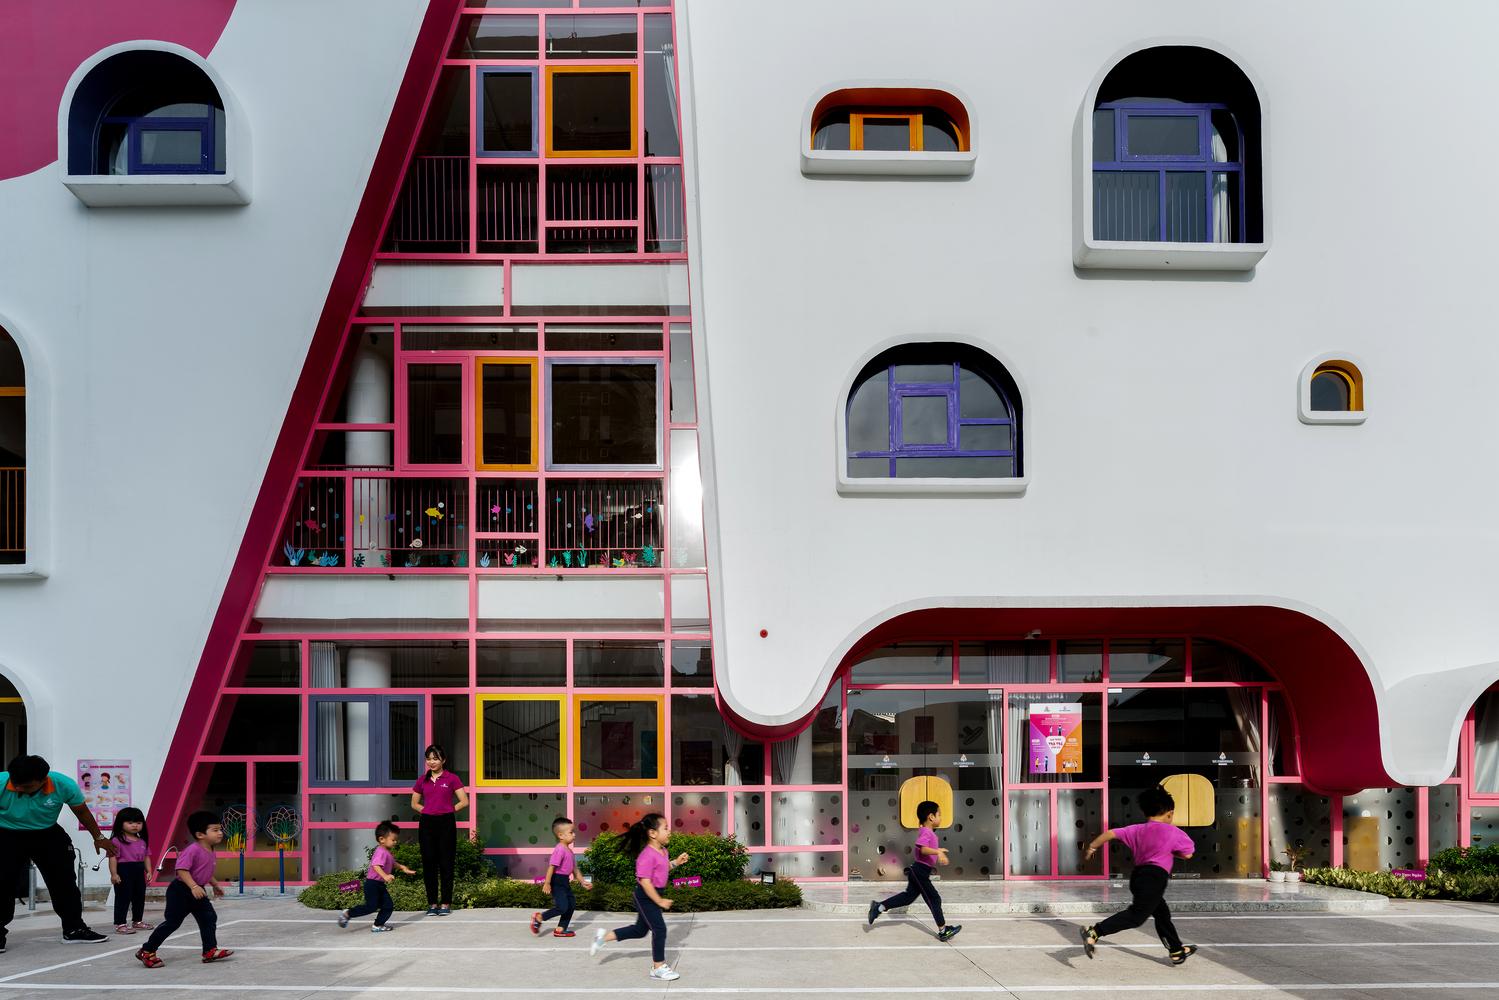 【越南幼兒園 x 立體主義建築】 以清新設計 激發孩子想像力